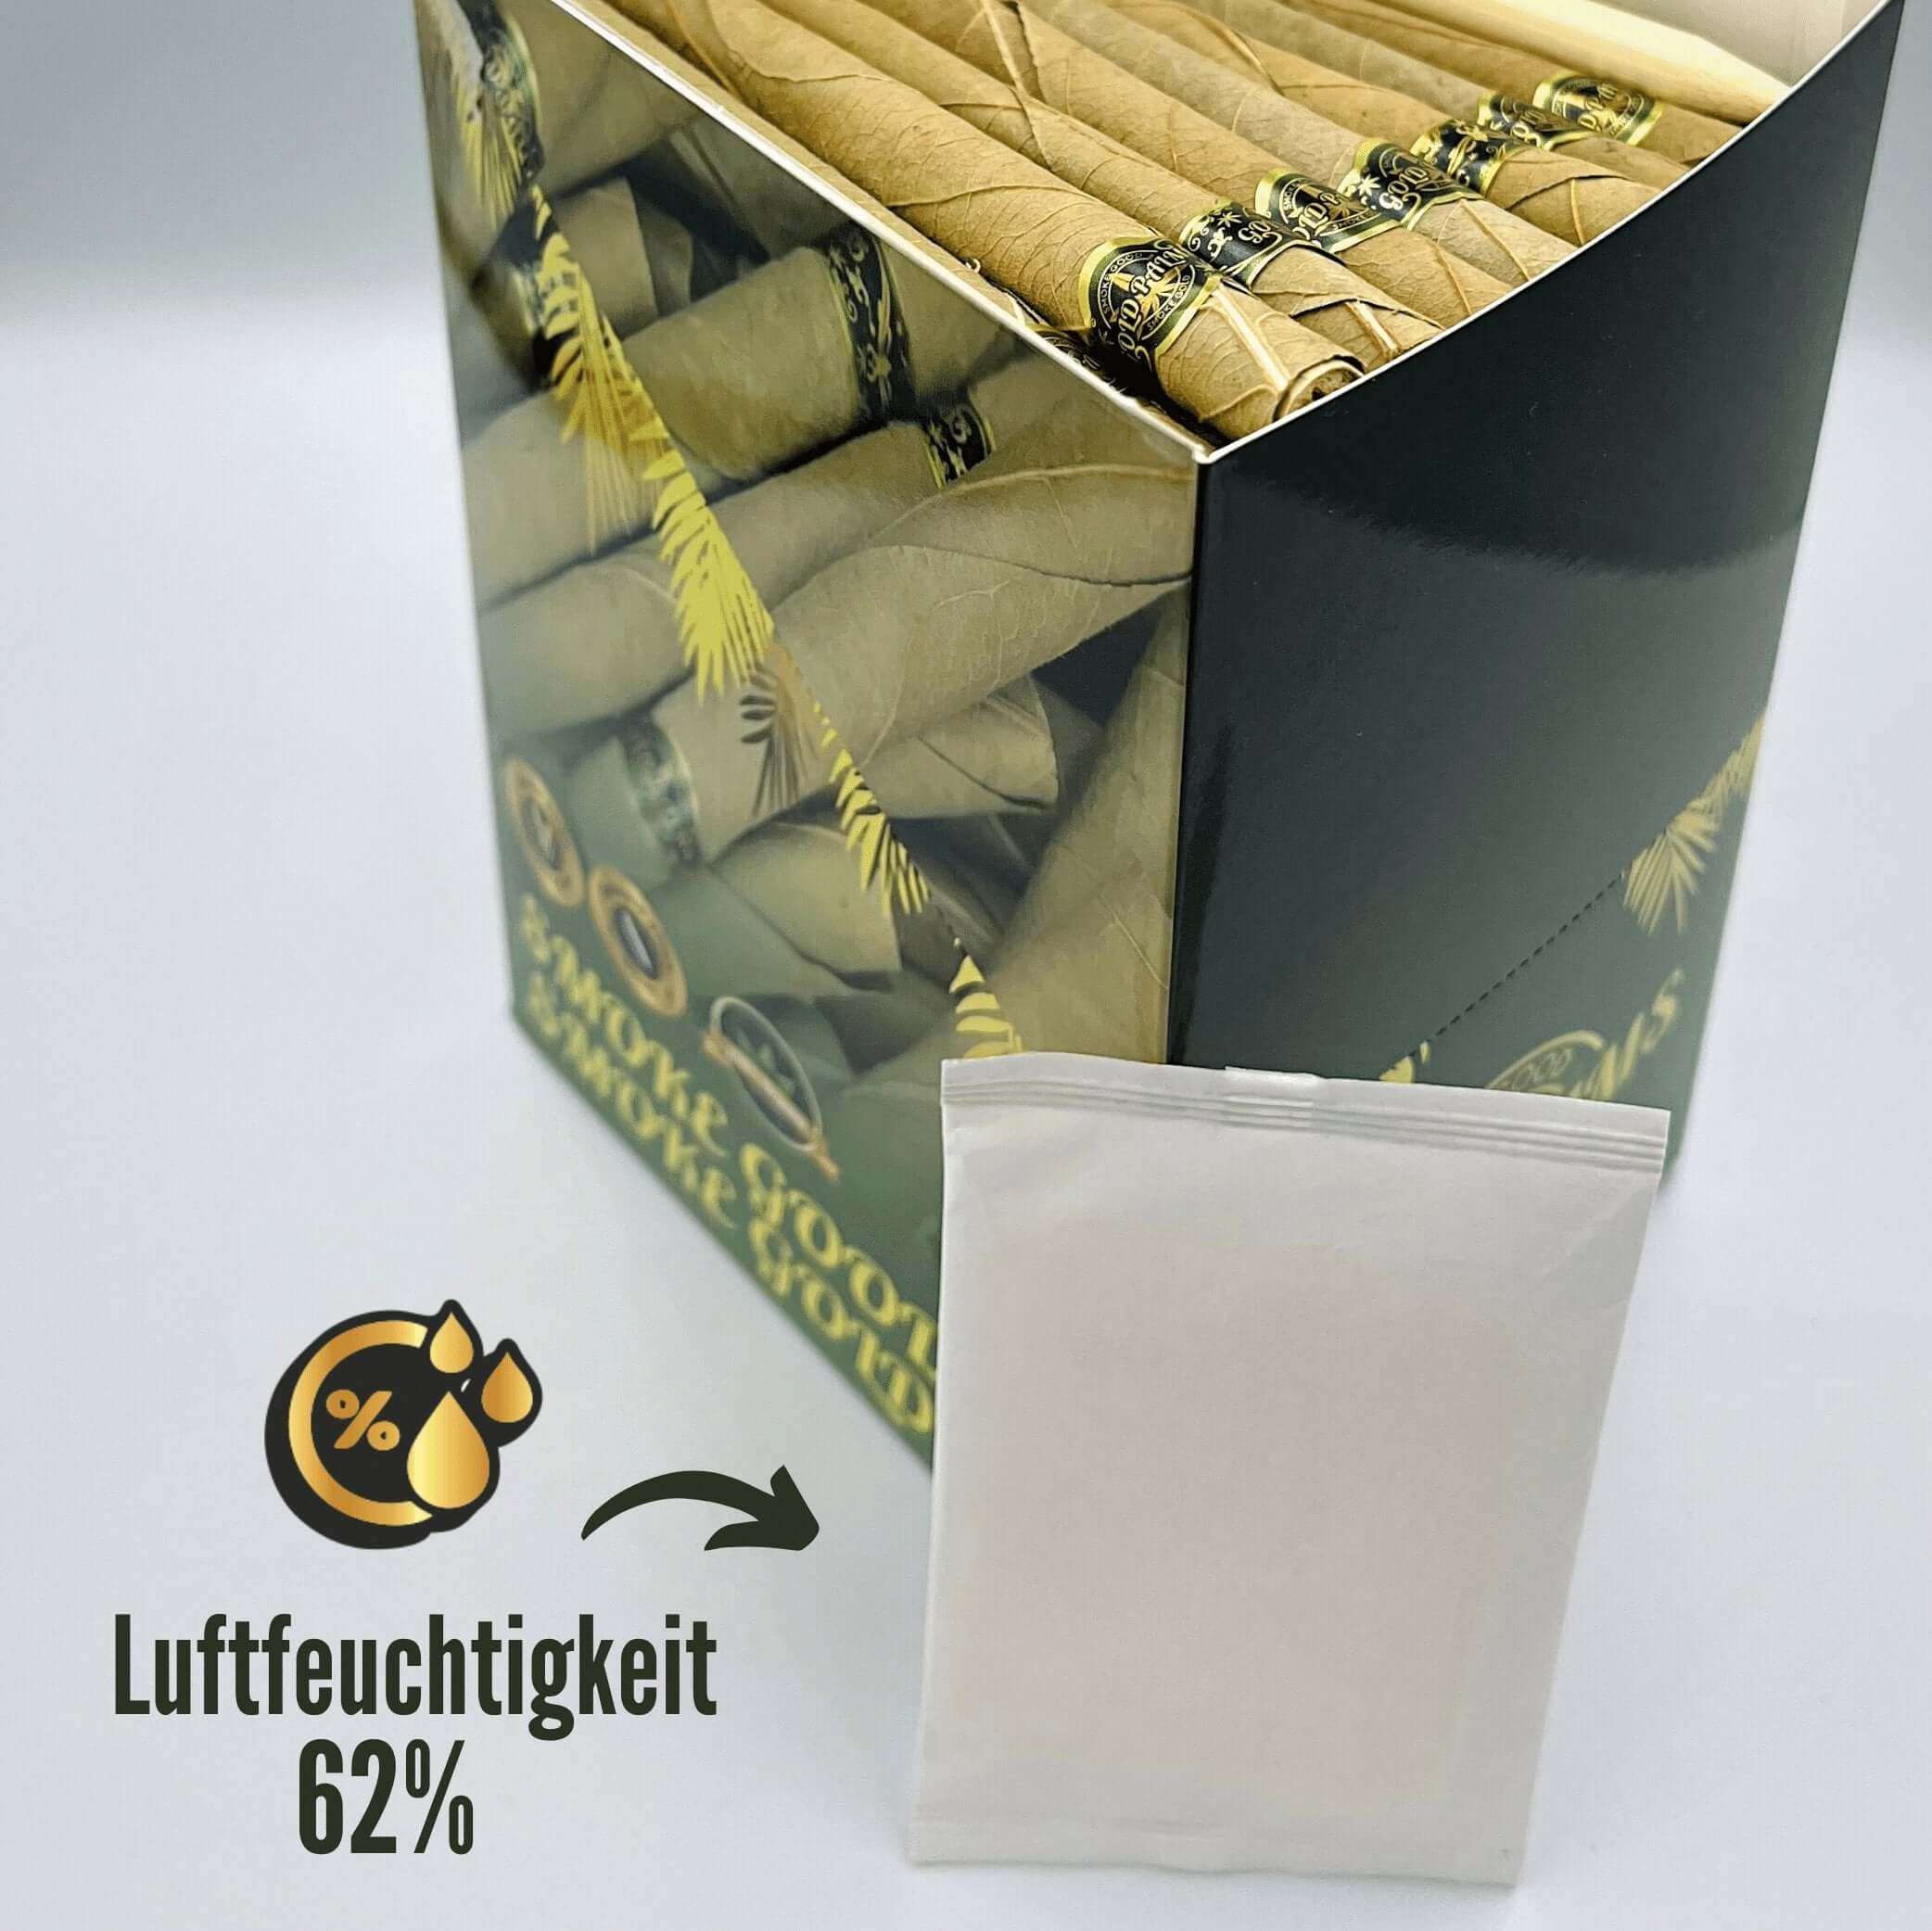 Humidor Pack in der Gold Palms Bulk Box, sorgt für optimale Frische und Luftfeuchtigkeit der Blunts.